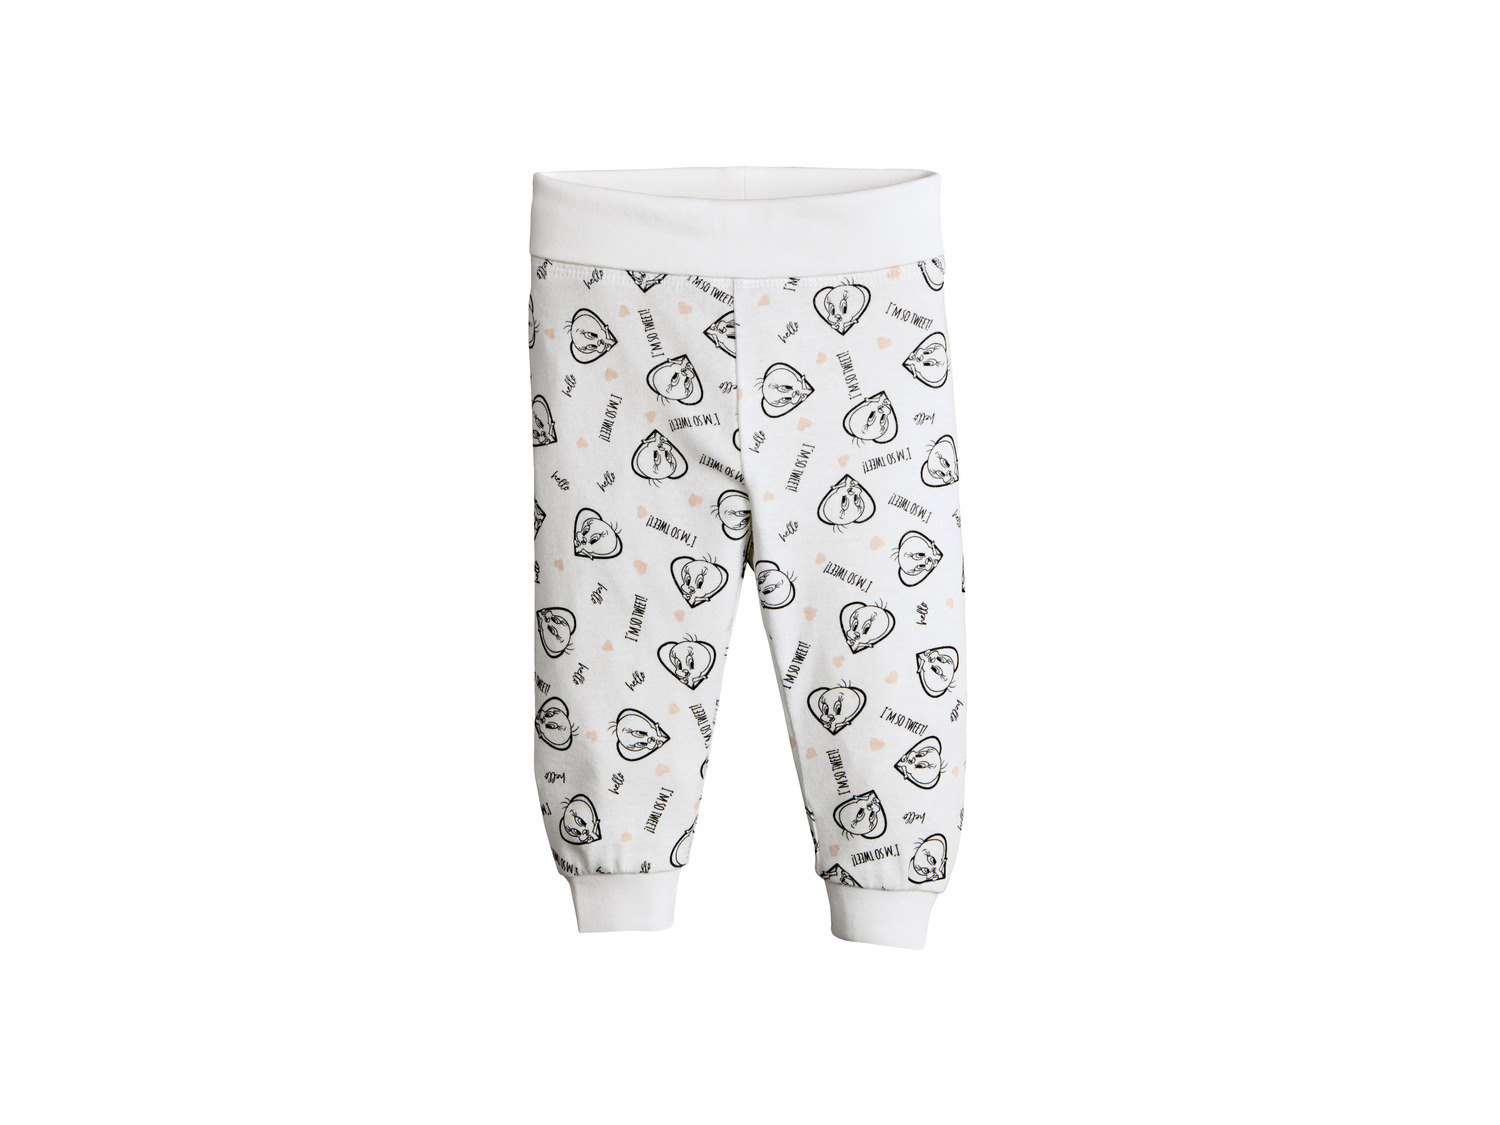 Spodnie dziecięce Oeko Tex, cena 4,99 PLN 
- różne wzory i rozmiary
Opis

- ...